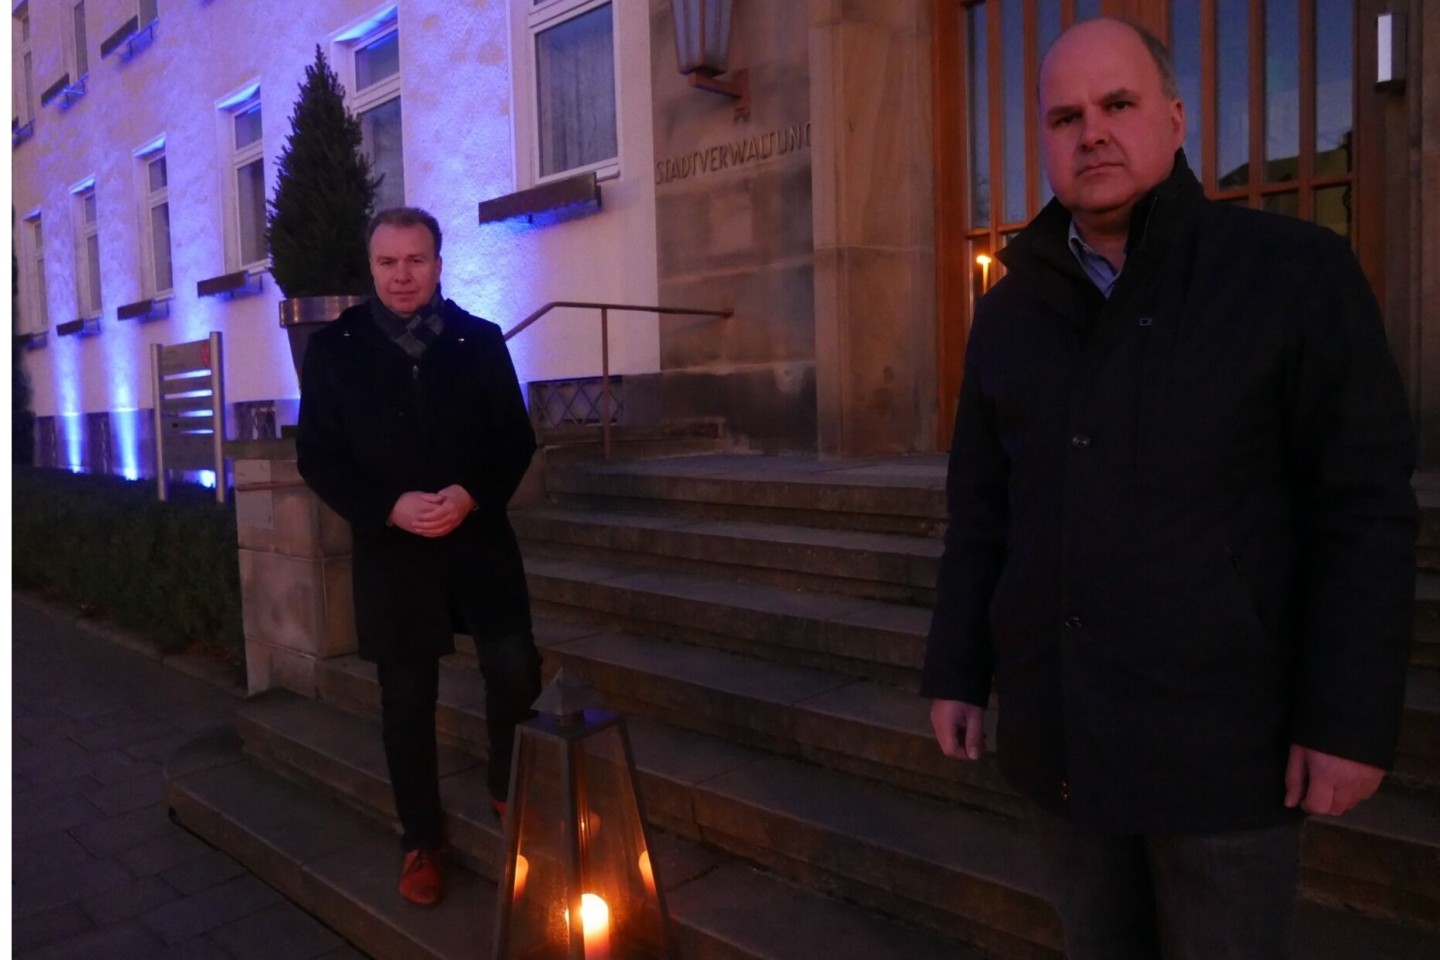 Die Bürgermeister der beiden Nachbarkommunen Bad Lippspringe und Schlangen setzten am Sonntagabend ein Zeichen der Solidarität mit den vom Krieg schwer betroffenen Menschen in der Ukraine. Das Badestä